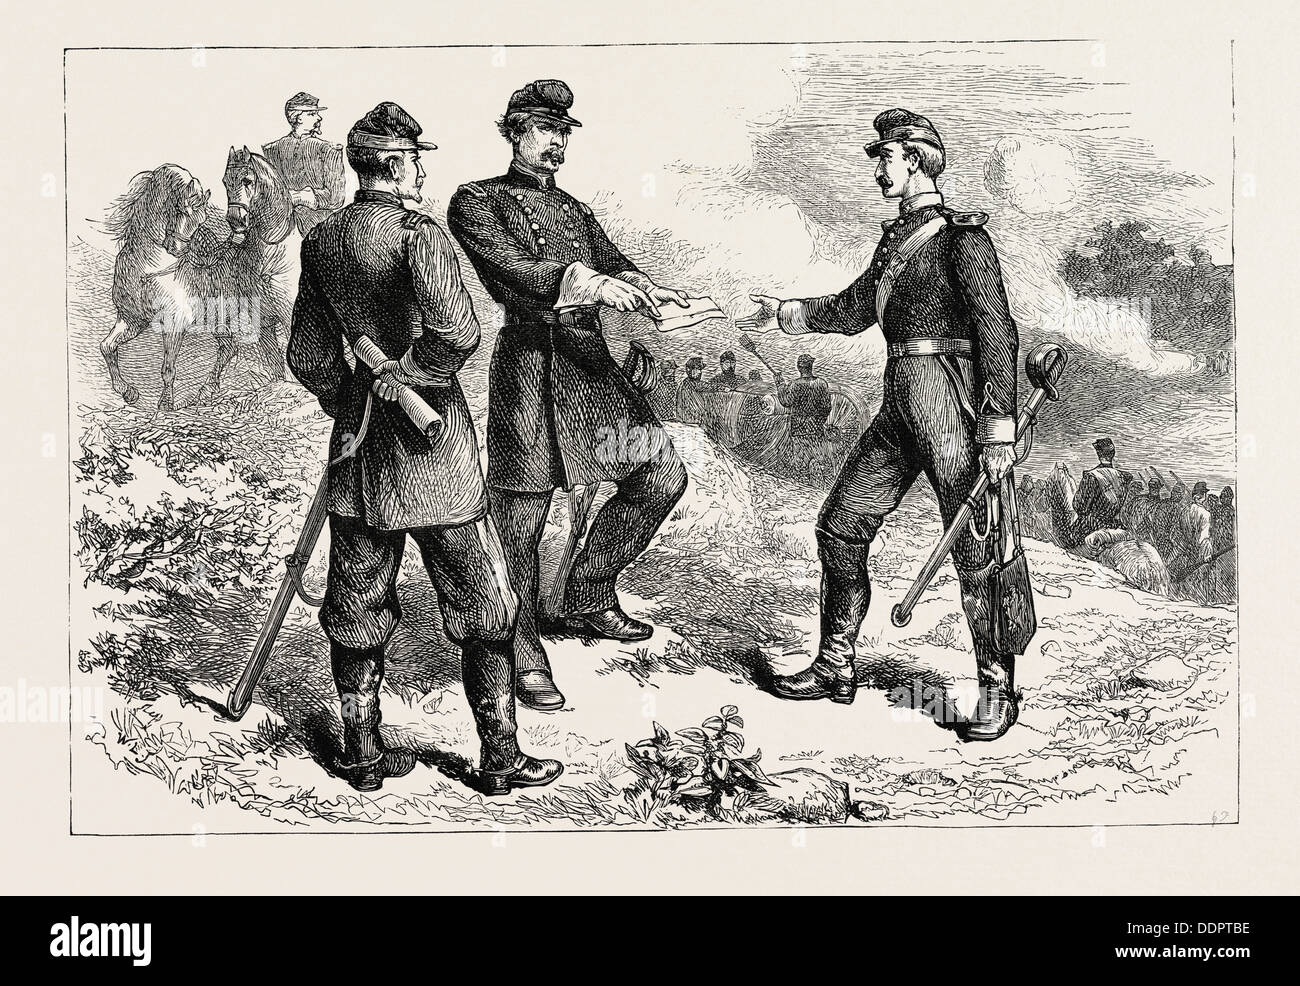 McCLELLAN in der Schlacht von ANTIETAM, Amerikanischer Bürgerkrieg, Vereinigte Staaten von Amerika, US, USA, 1870 s Gravur Stockfoto